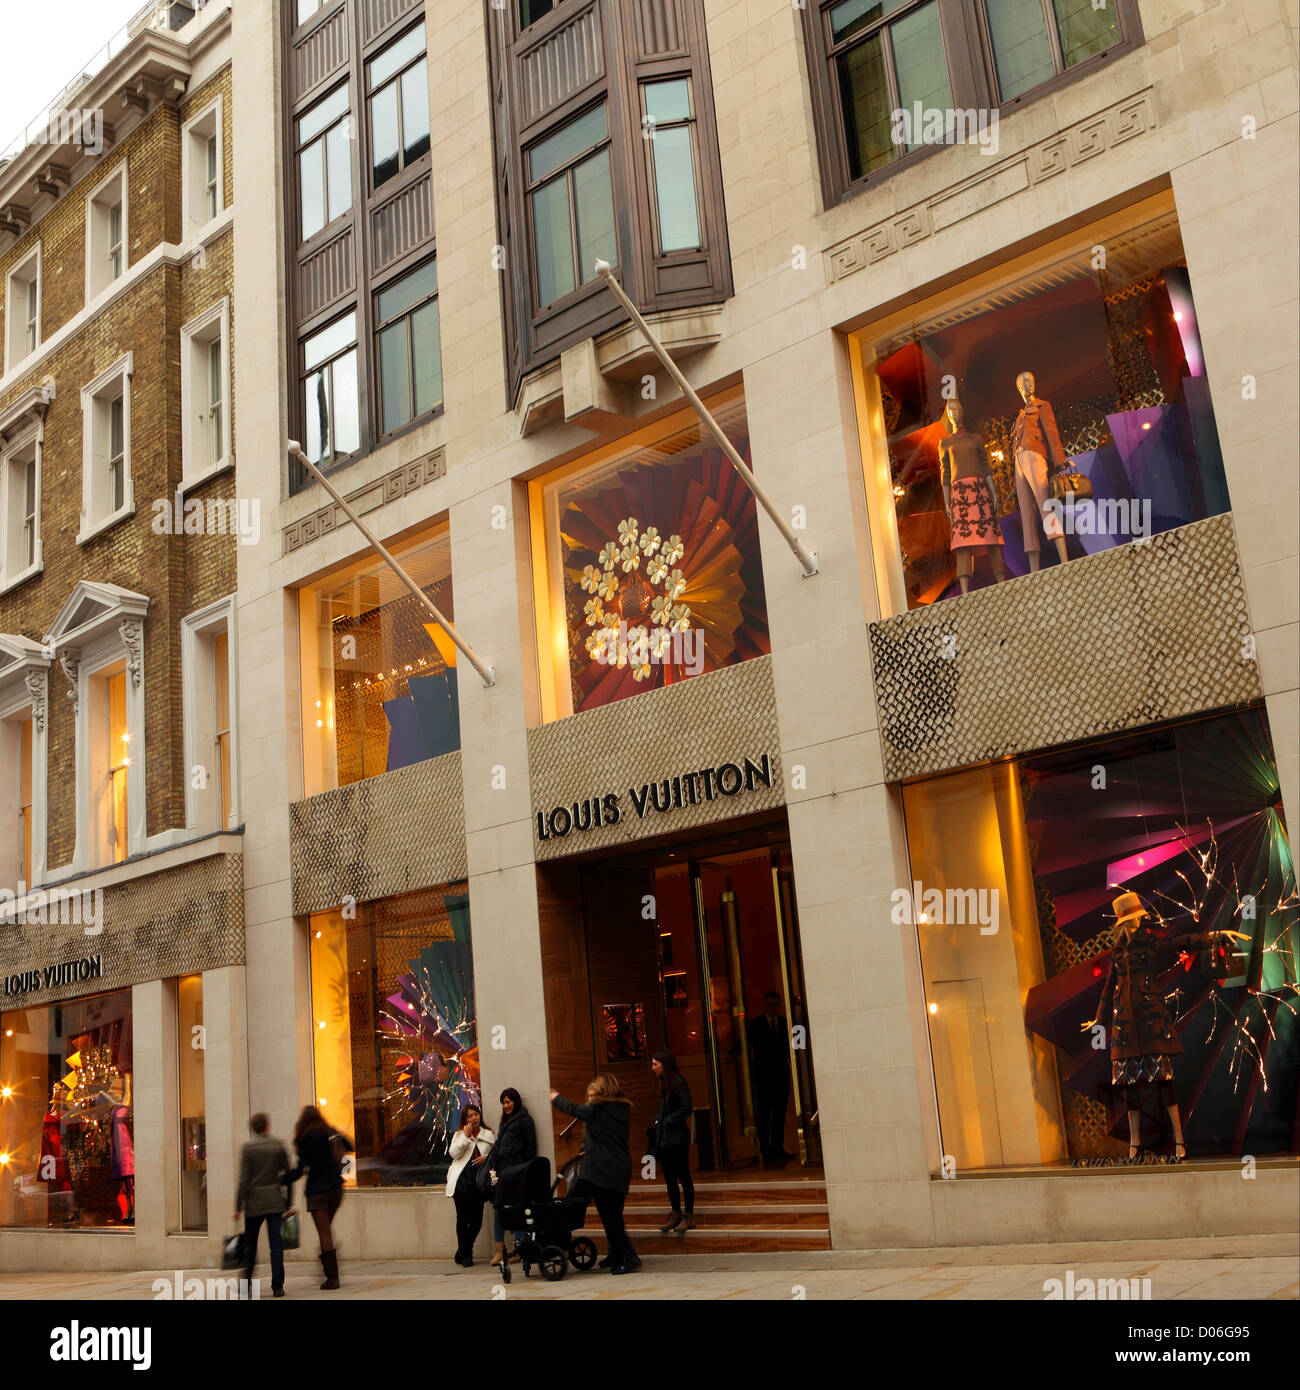 Louis Vuitton eröffnet exklusivsten Flagship-Store Europas in